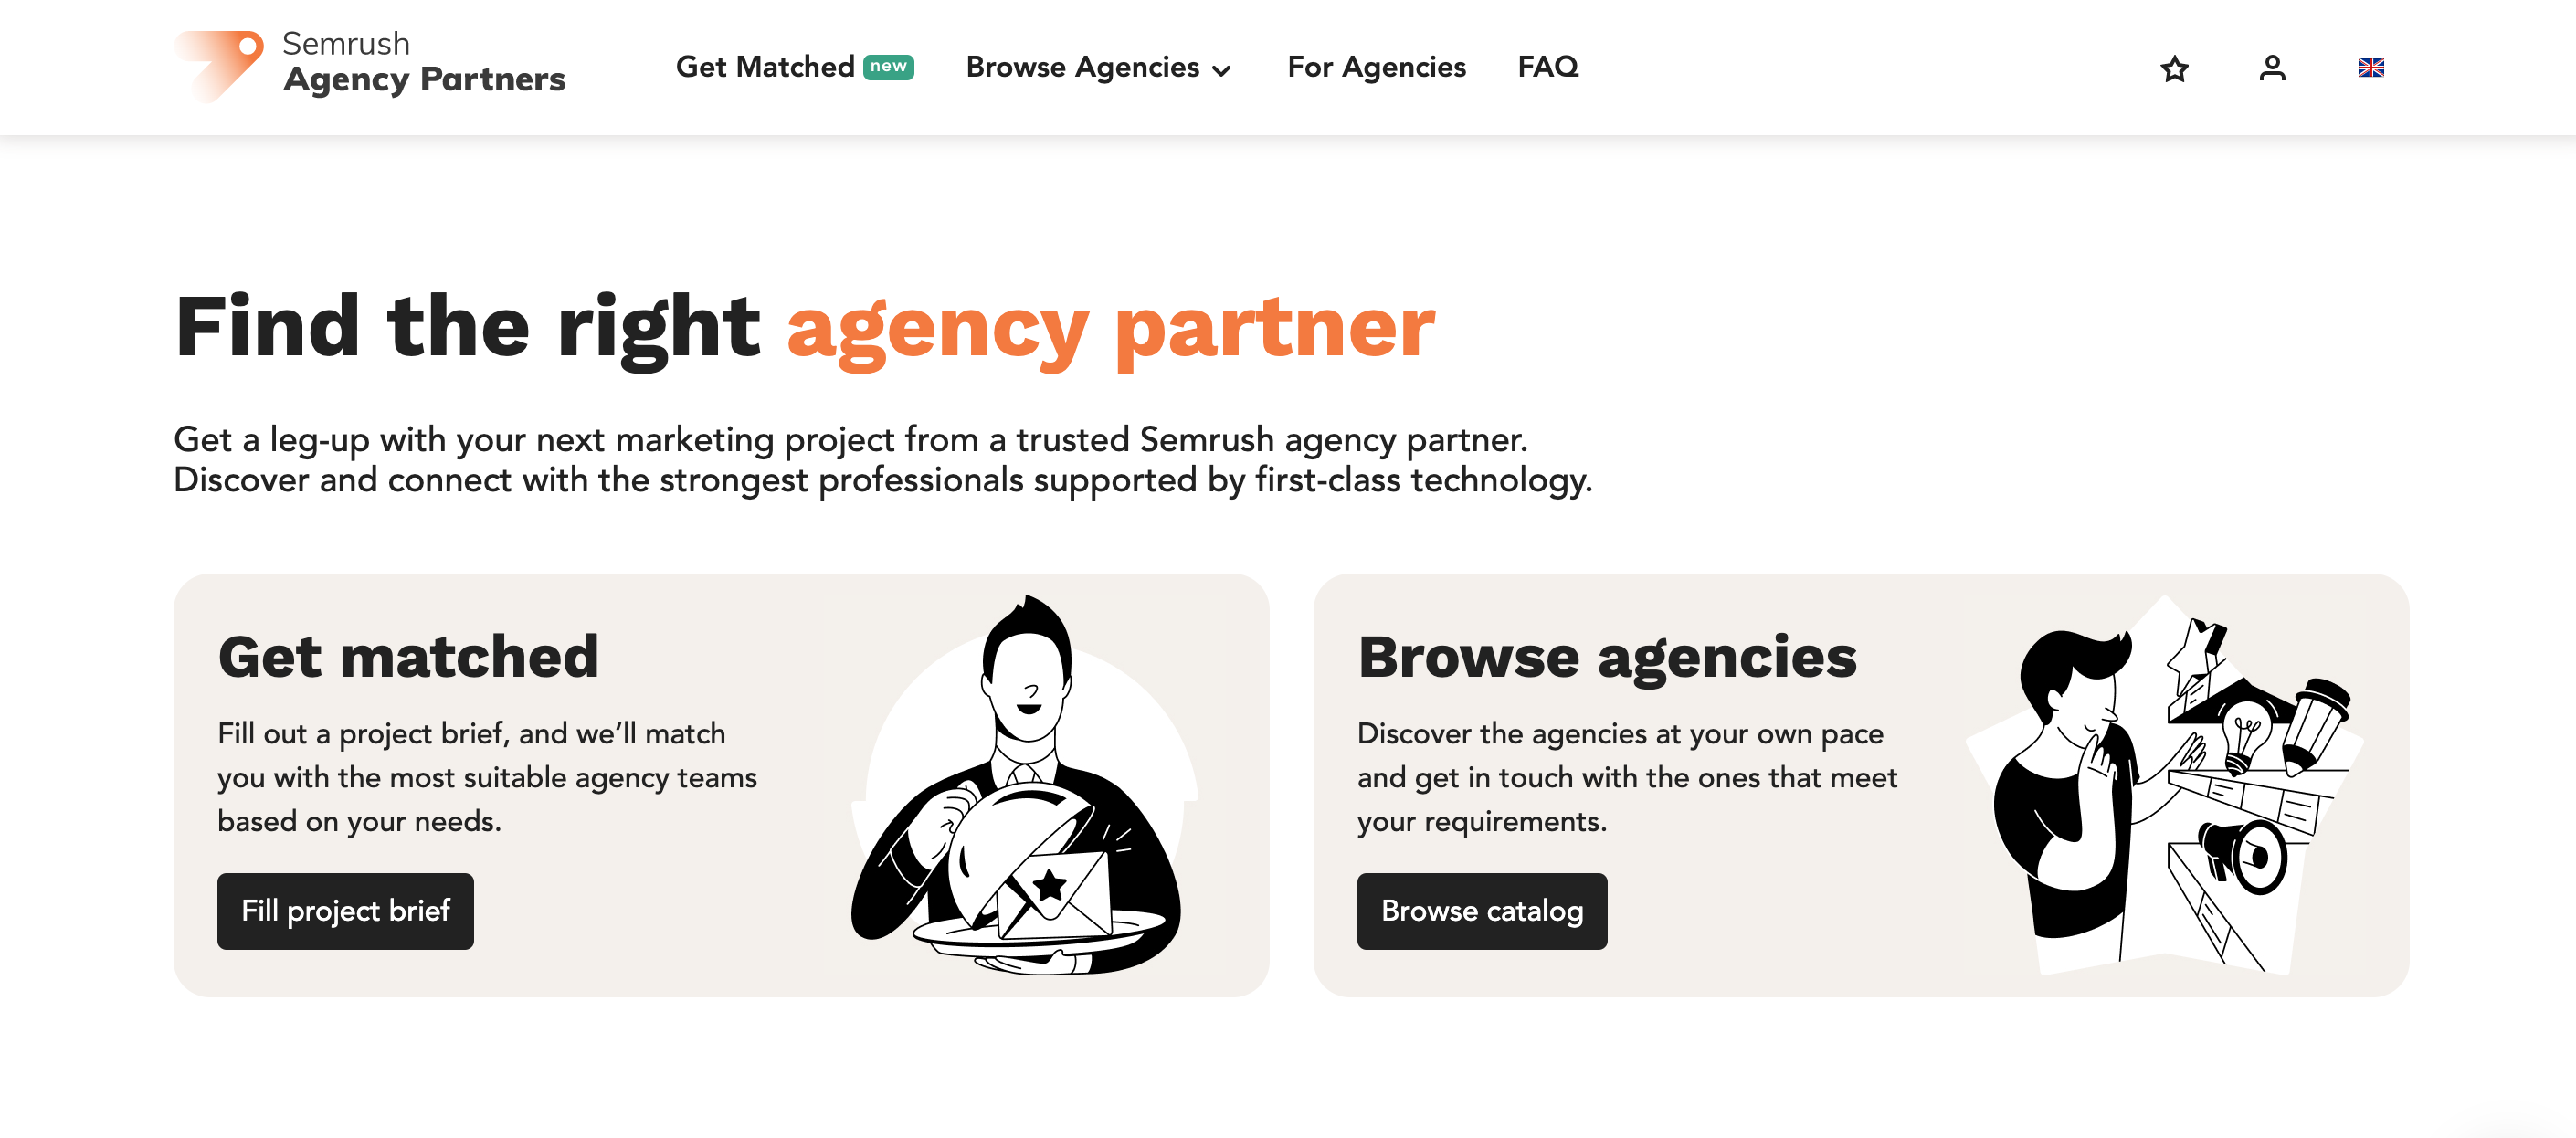 Die Startseite der Agenturpartner-Plattform zeigt Buttons, um ein Projektbriefing auszufüllen und den passenden Partner zu finden oder den Agenturkatalog zu durchstöbern. 